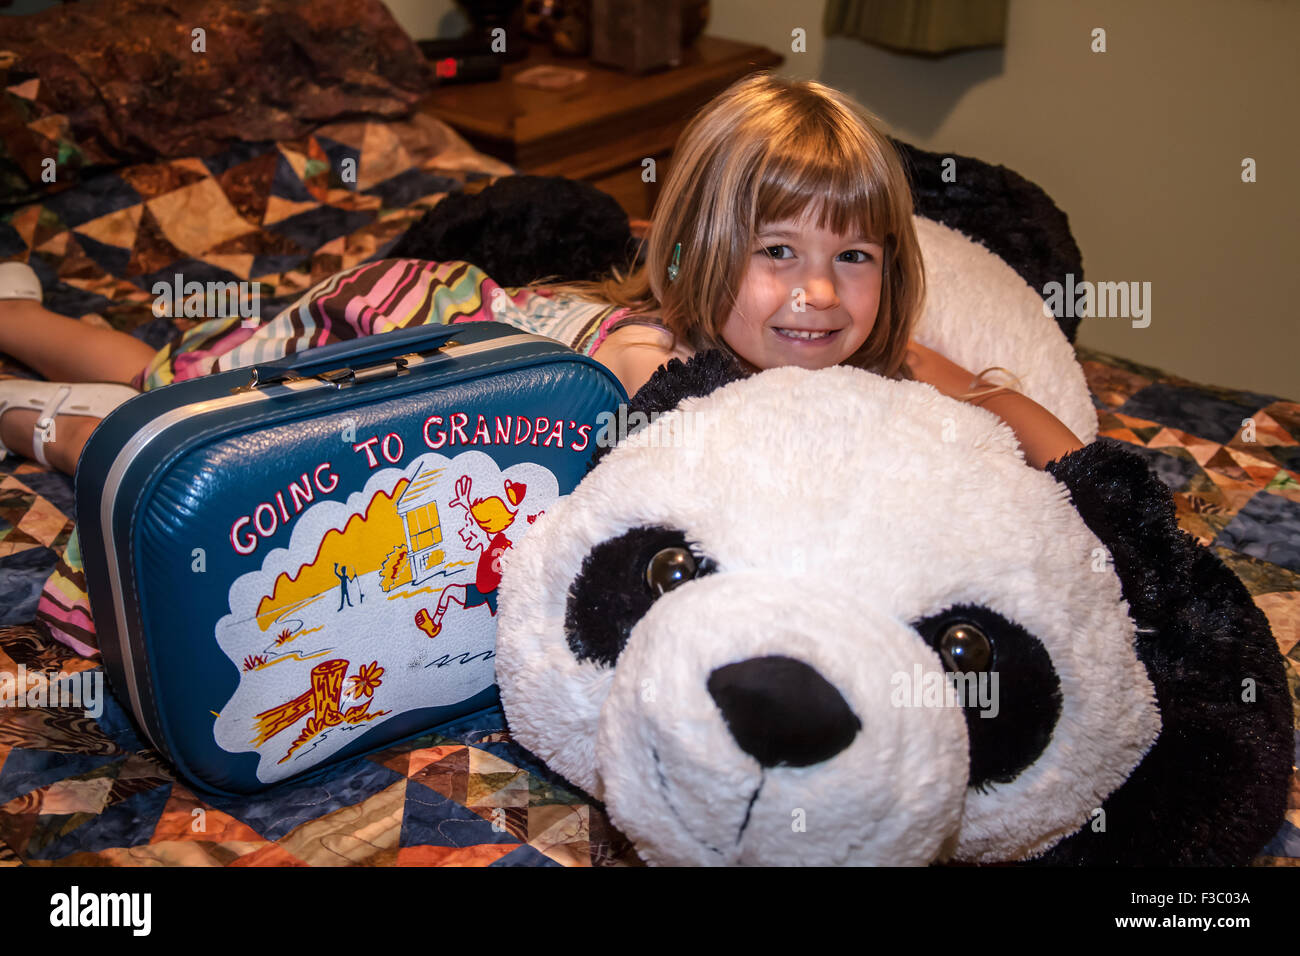 4 anno vecchia ragazza abbracciando ripieni di grande orso panda che sta andando a dormire con mentre soggiornate presso il suo nonno's house Foto Stock